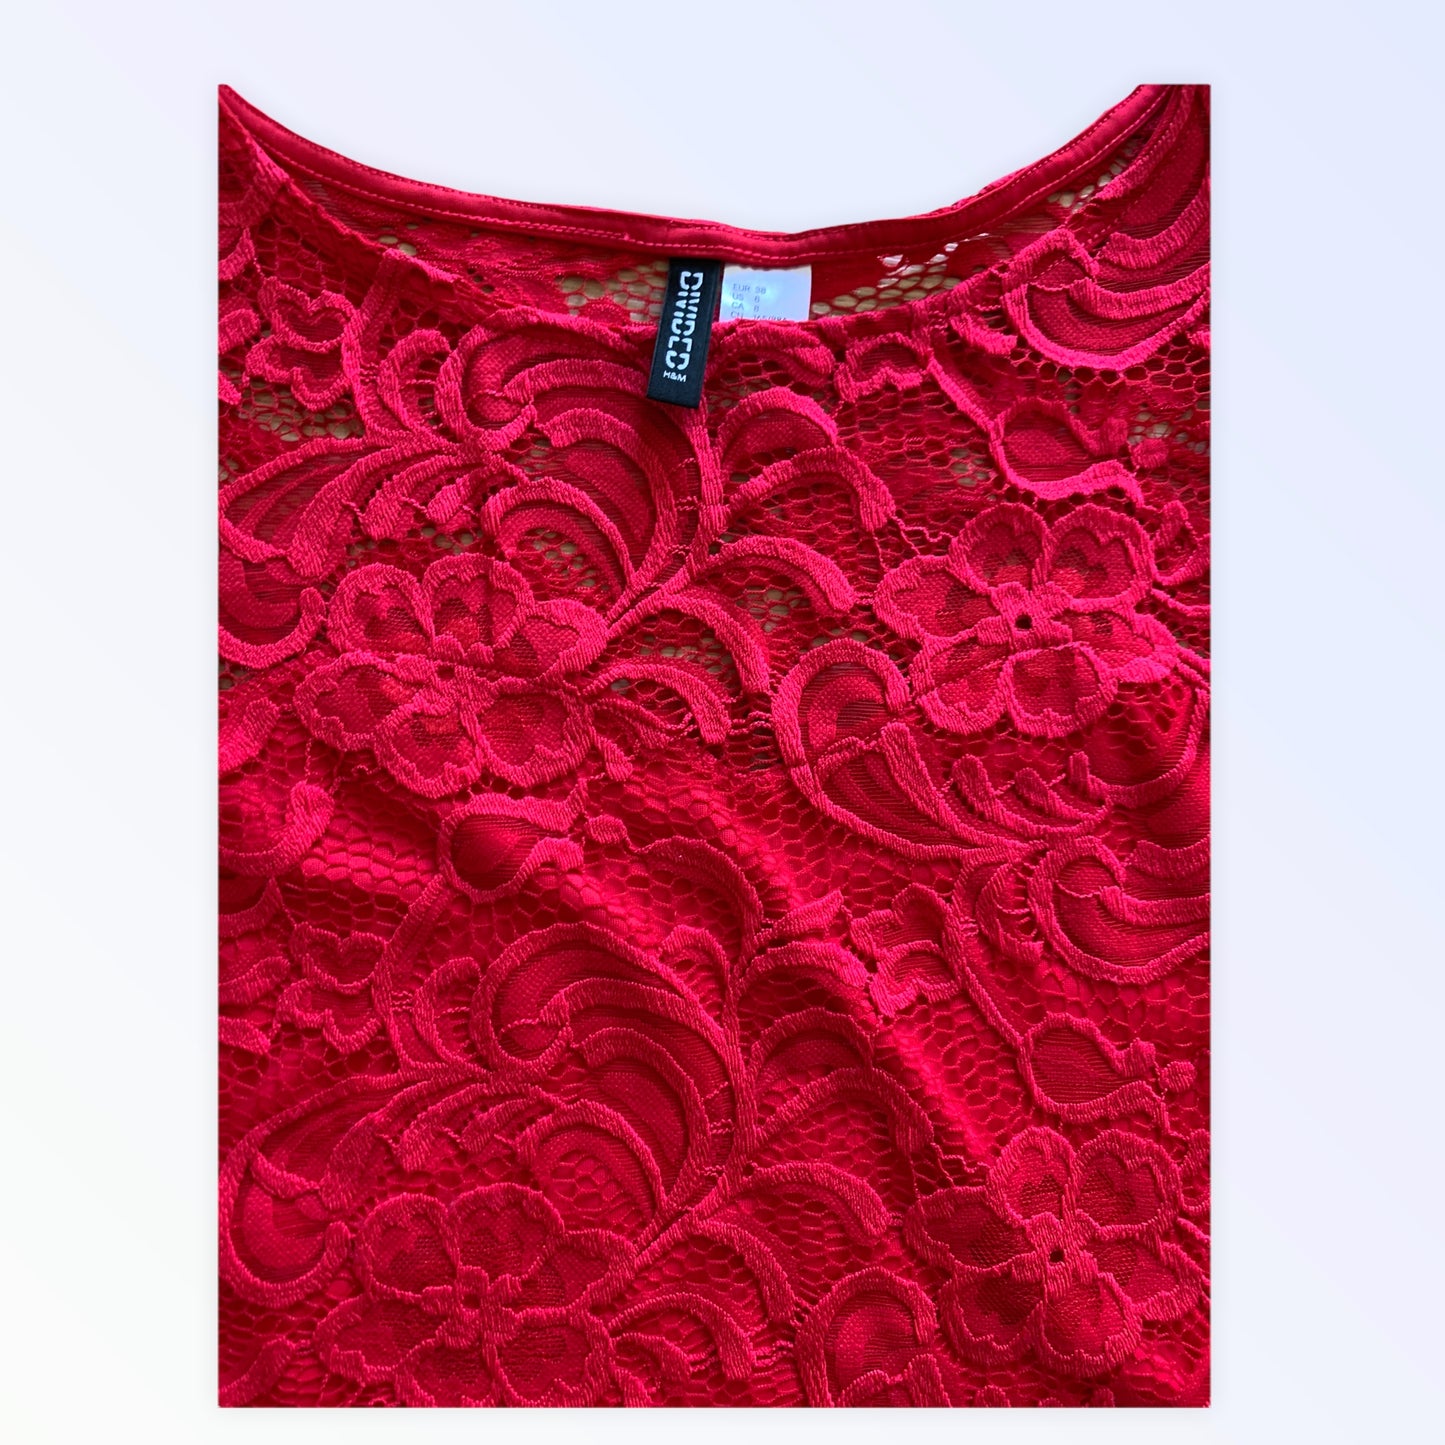 H&amp;M Divided Kleid Damen rotes Spitzenkleid XS 40